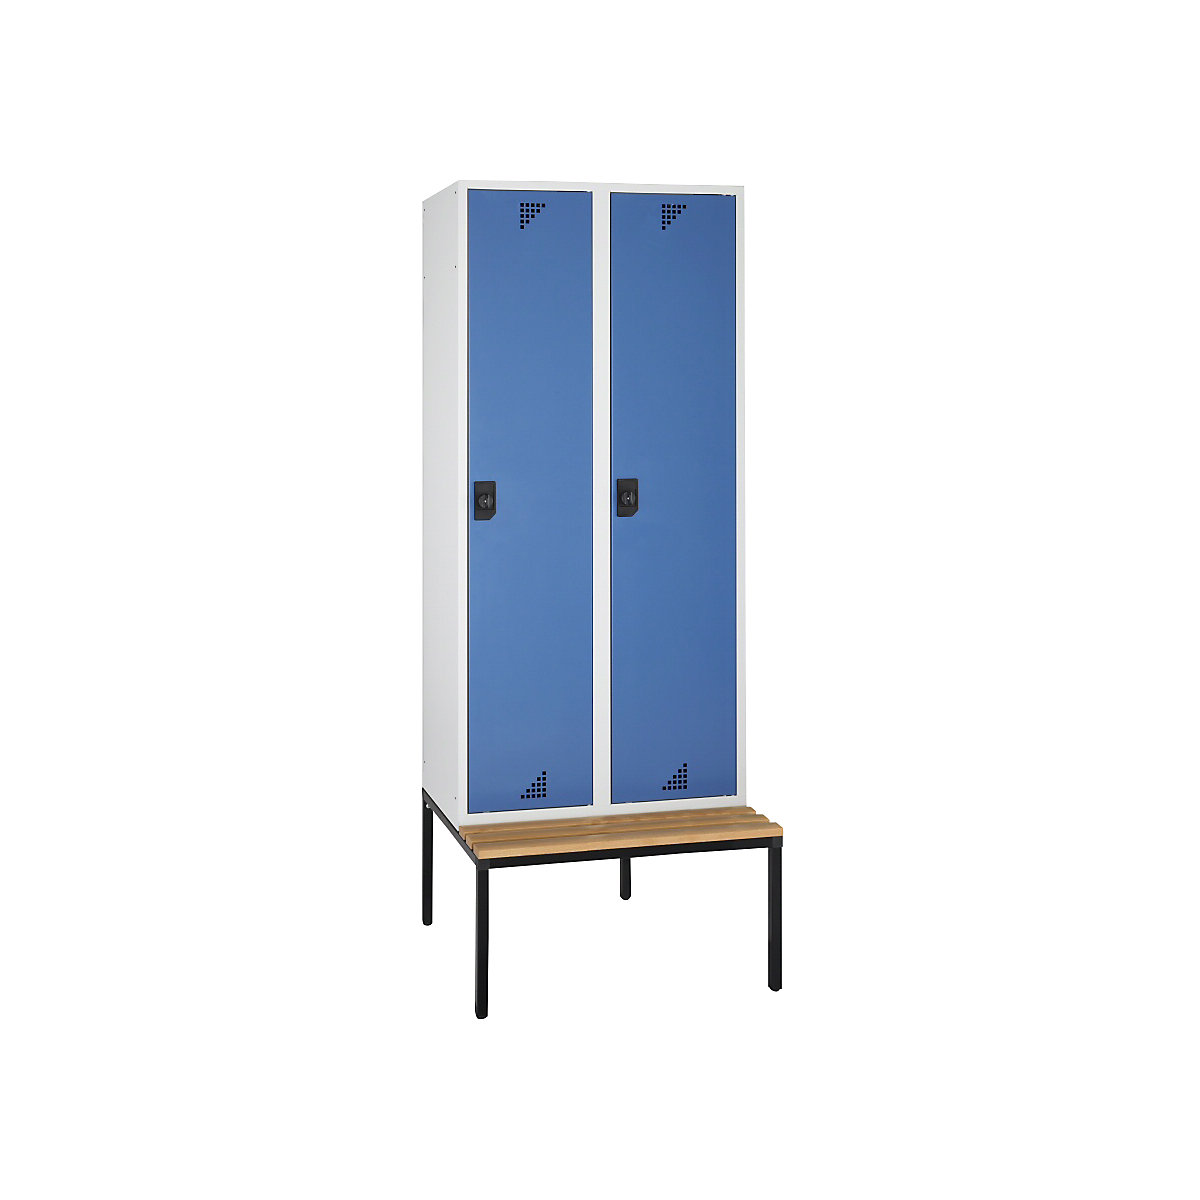 Öltözőszekrény és többfunkciós szekrény – eurokraft pro, ülőpaddal, 2 fülke, szélesség 800 mm, ragyogó kék ajtó-5